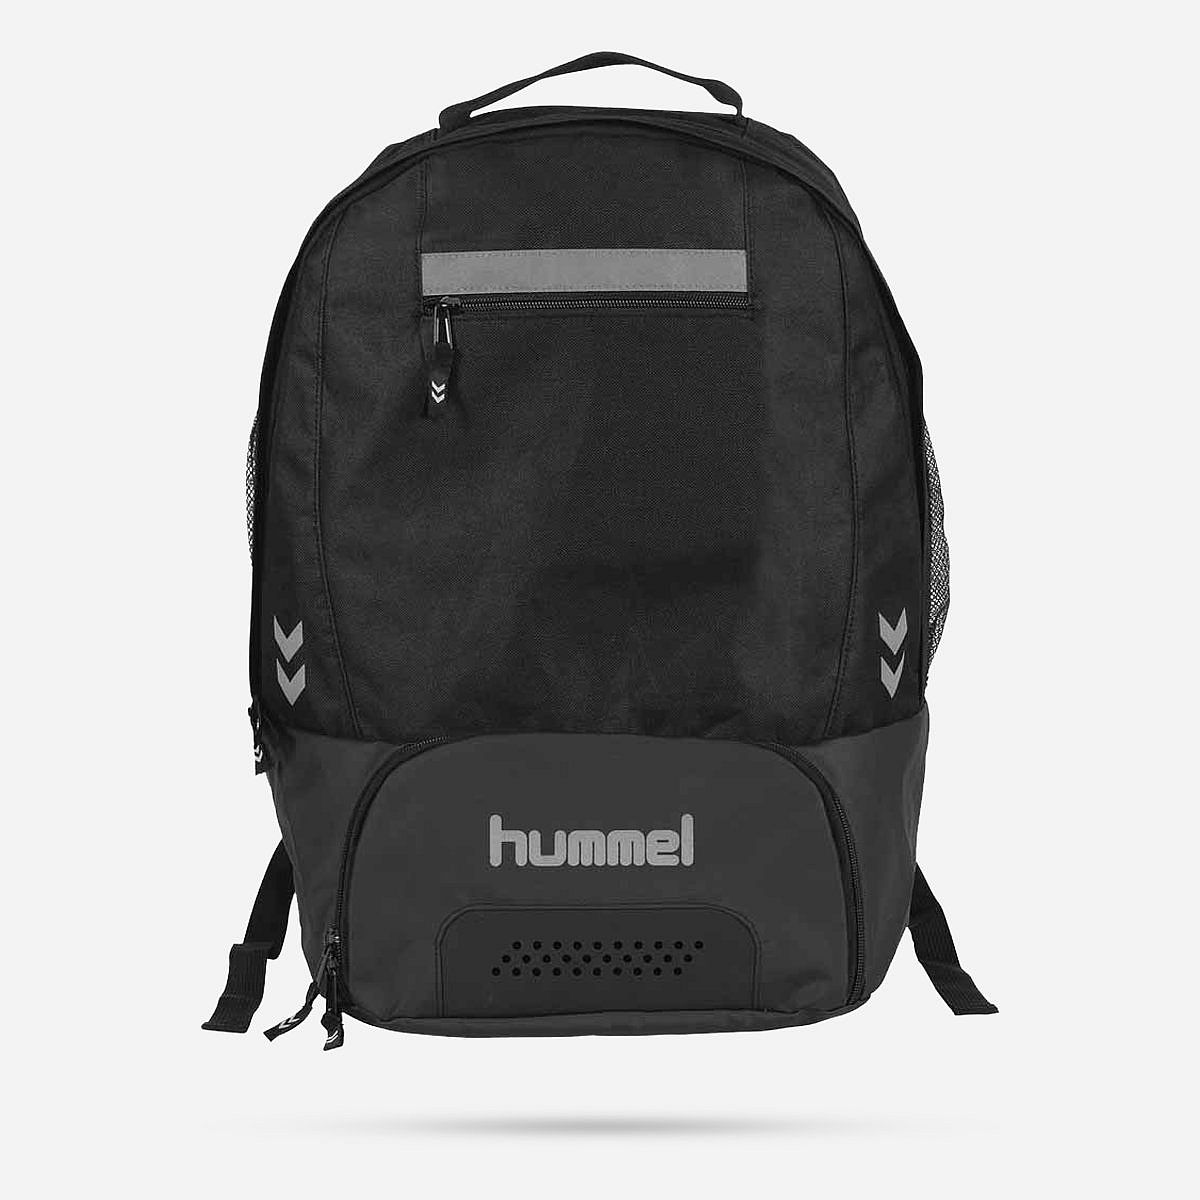 AN229710 Leeston backpack